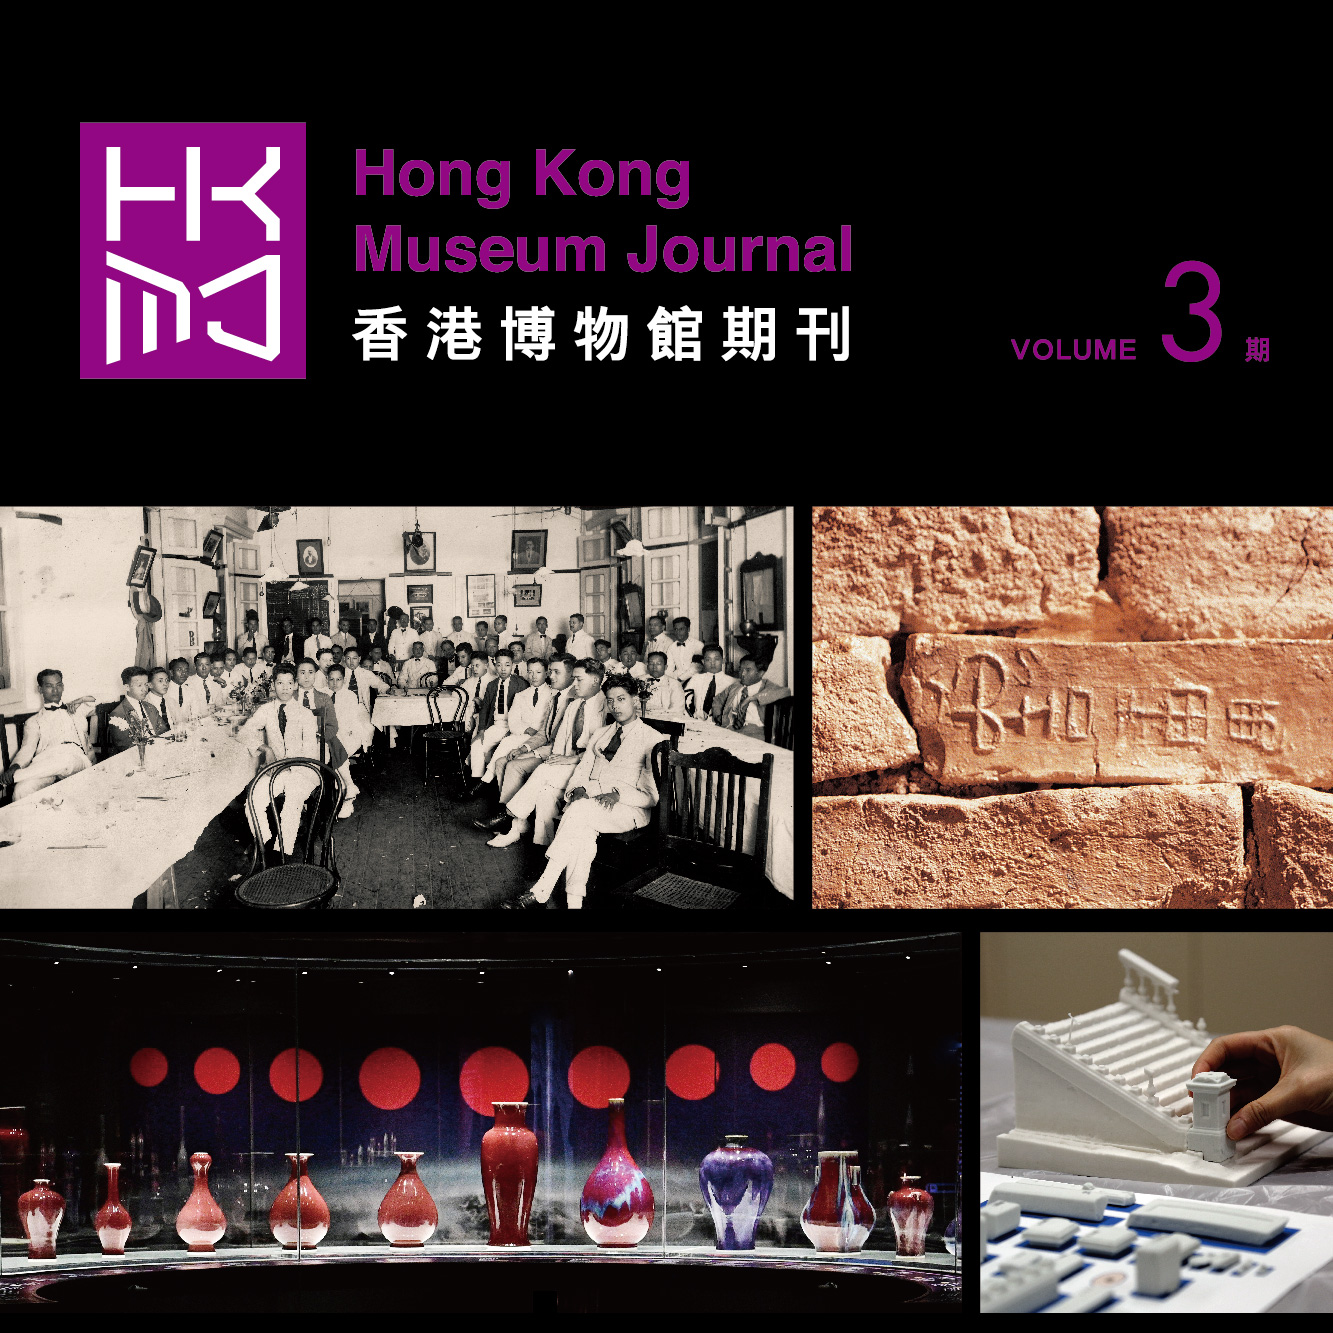 Hong Kong Museum Journal (Volume 3)